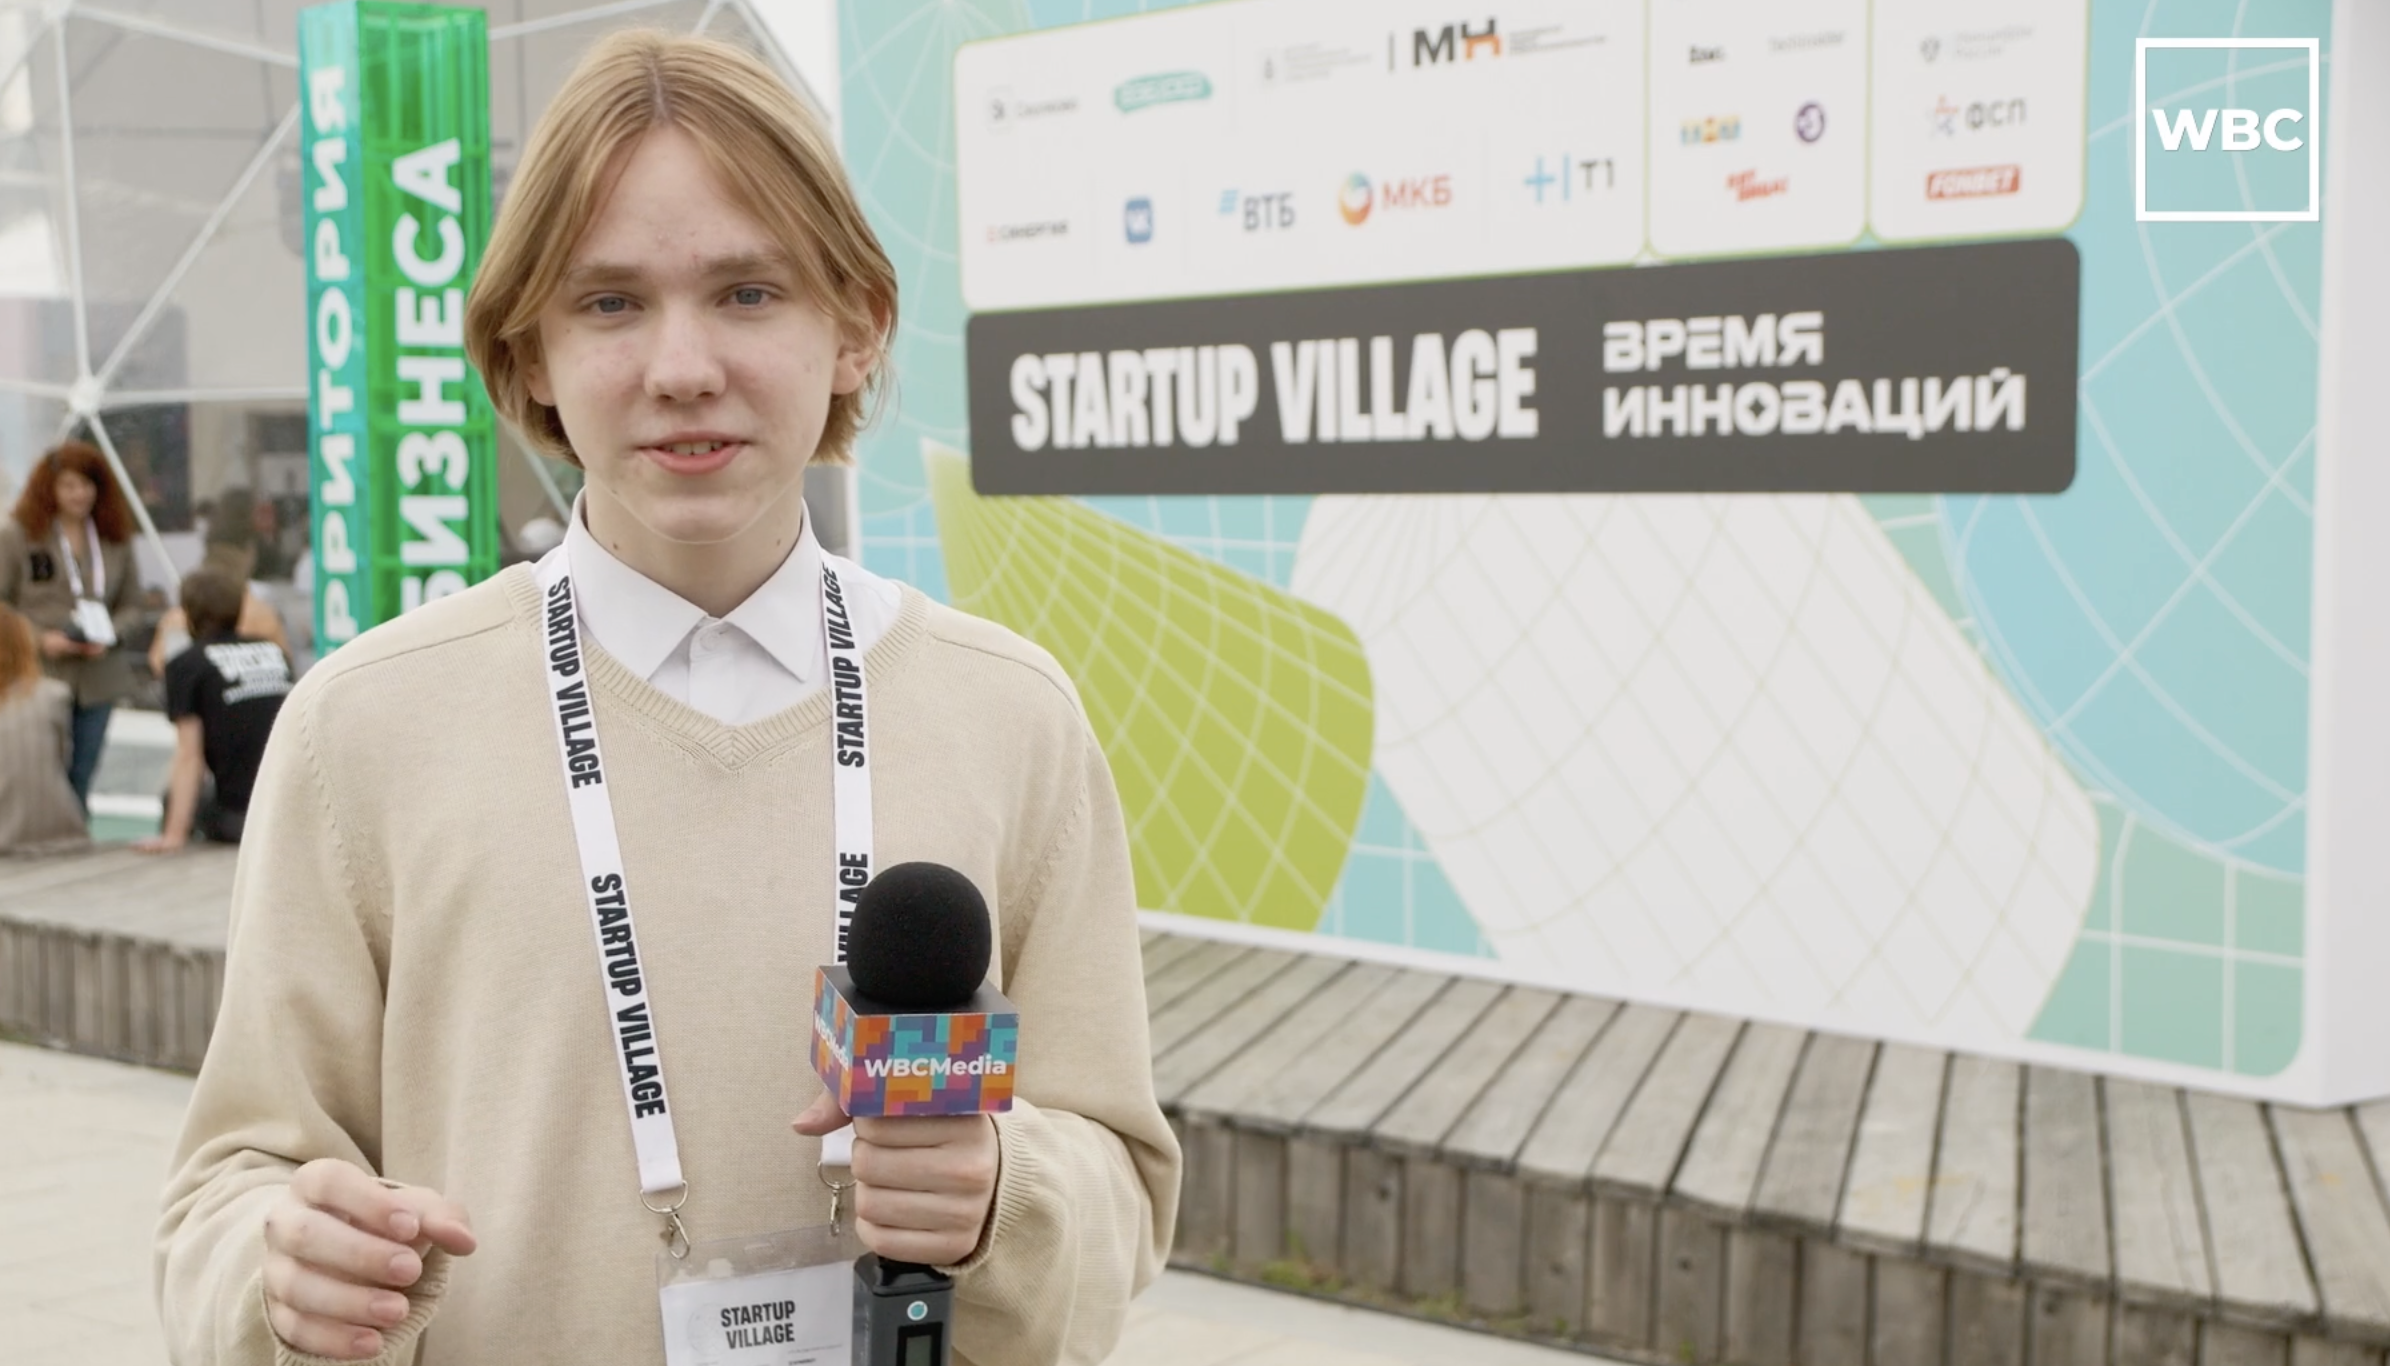 Startup Village в Сколково. Российский финтех